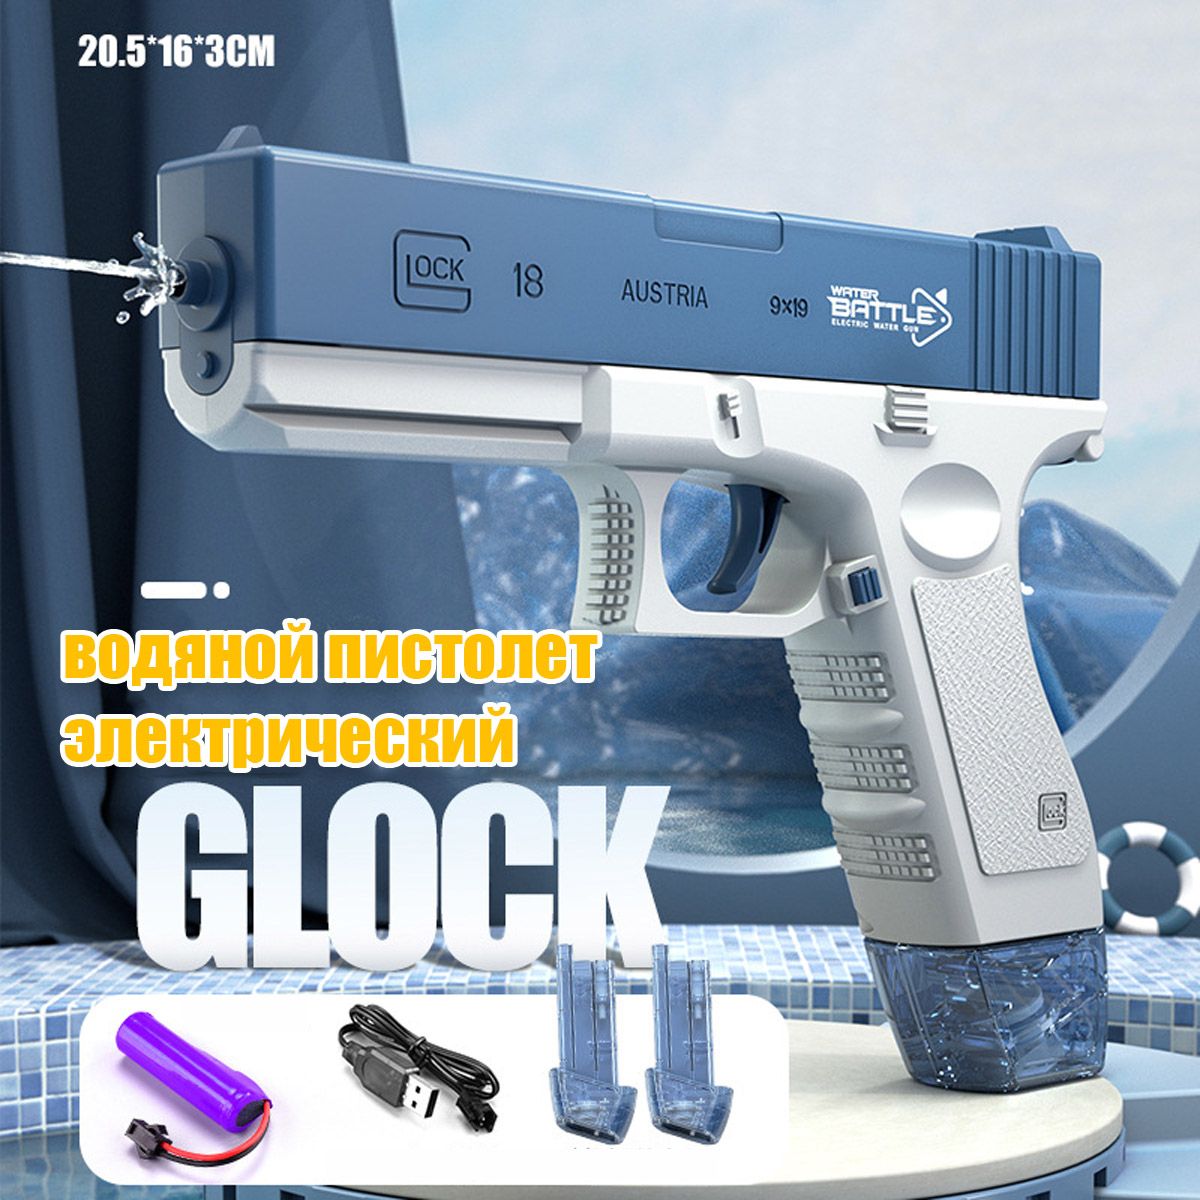 Электрический водный Пистолет игрушечный RASULEV Glok 18 на аккумуляторе - купить в IZI SHOP, цена на Мегамаркет